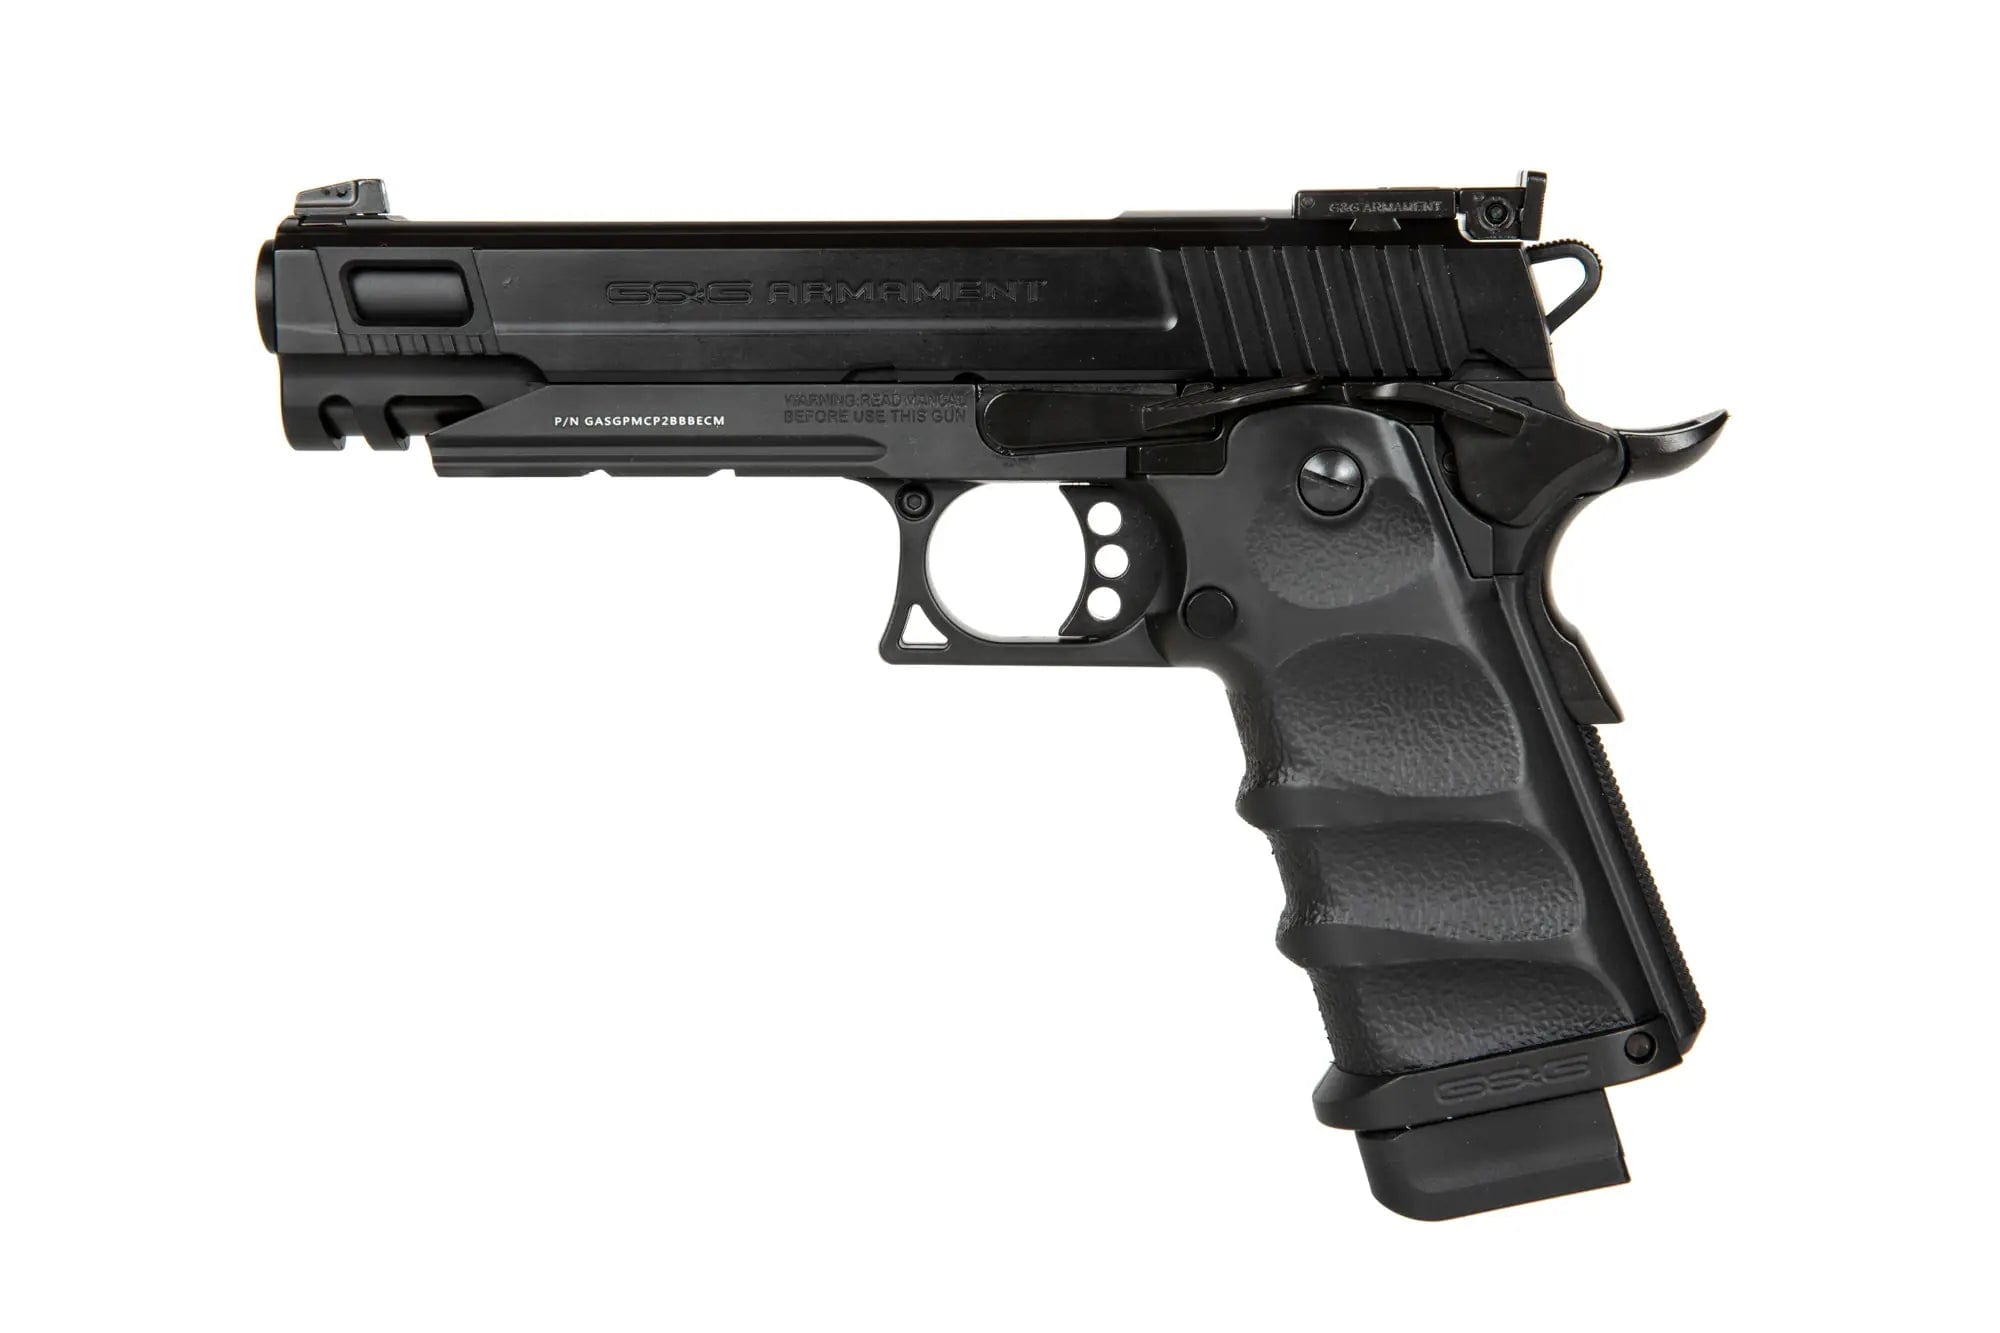 GPM1911 CPMS MK II Pistol Replica - Black